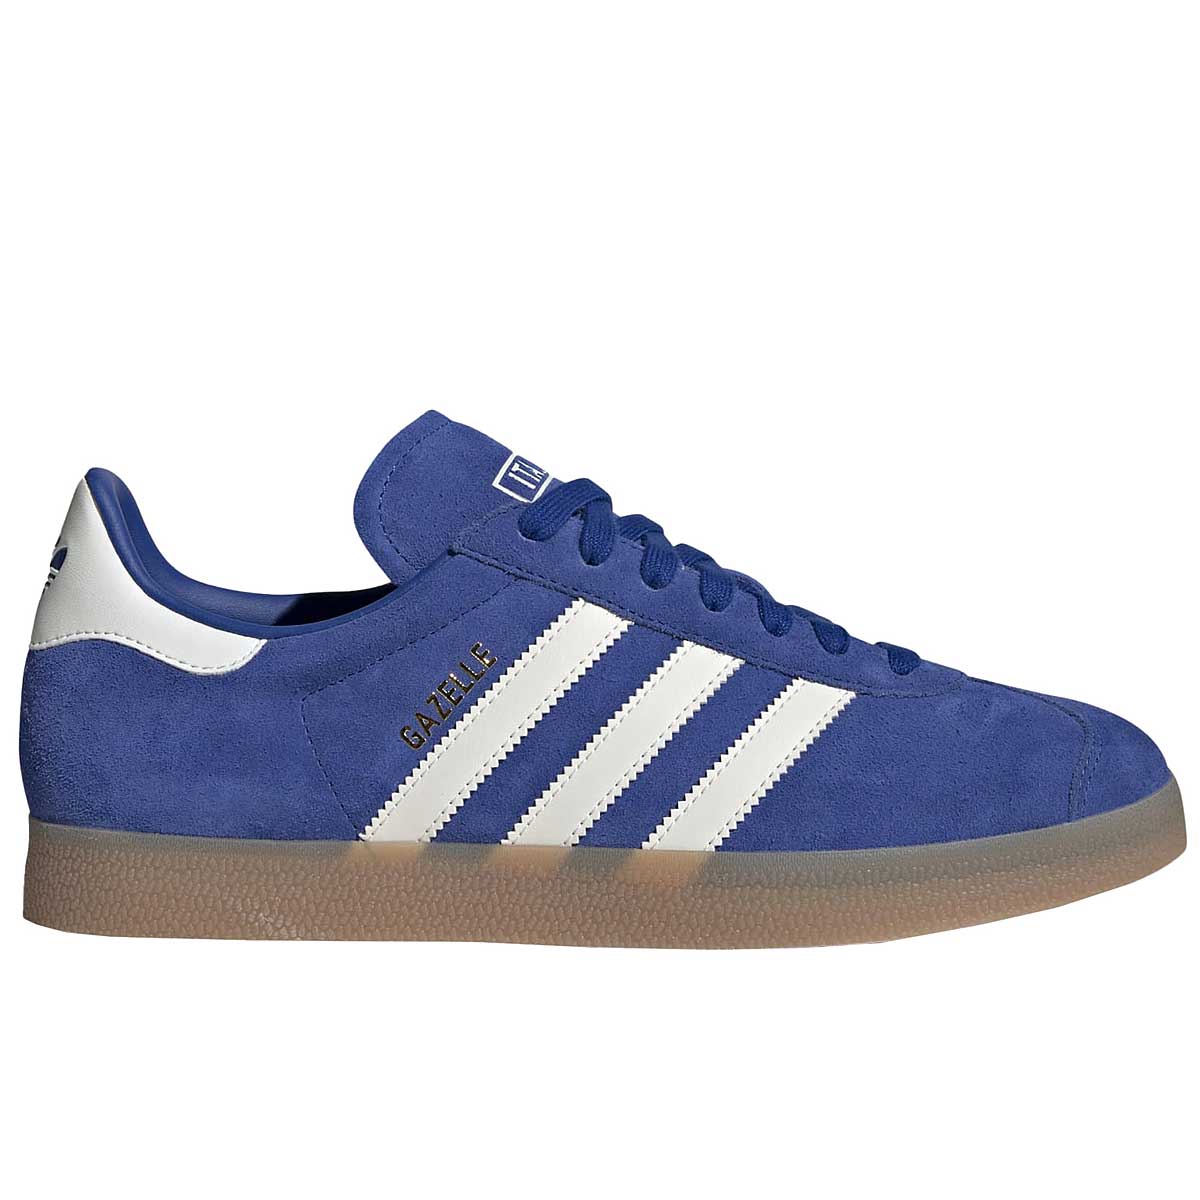 Adidas Originals Gazelle, Blue/white/orange EU42 2/3